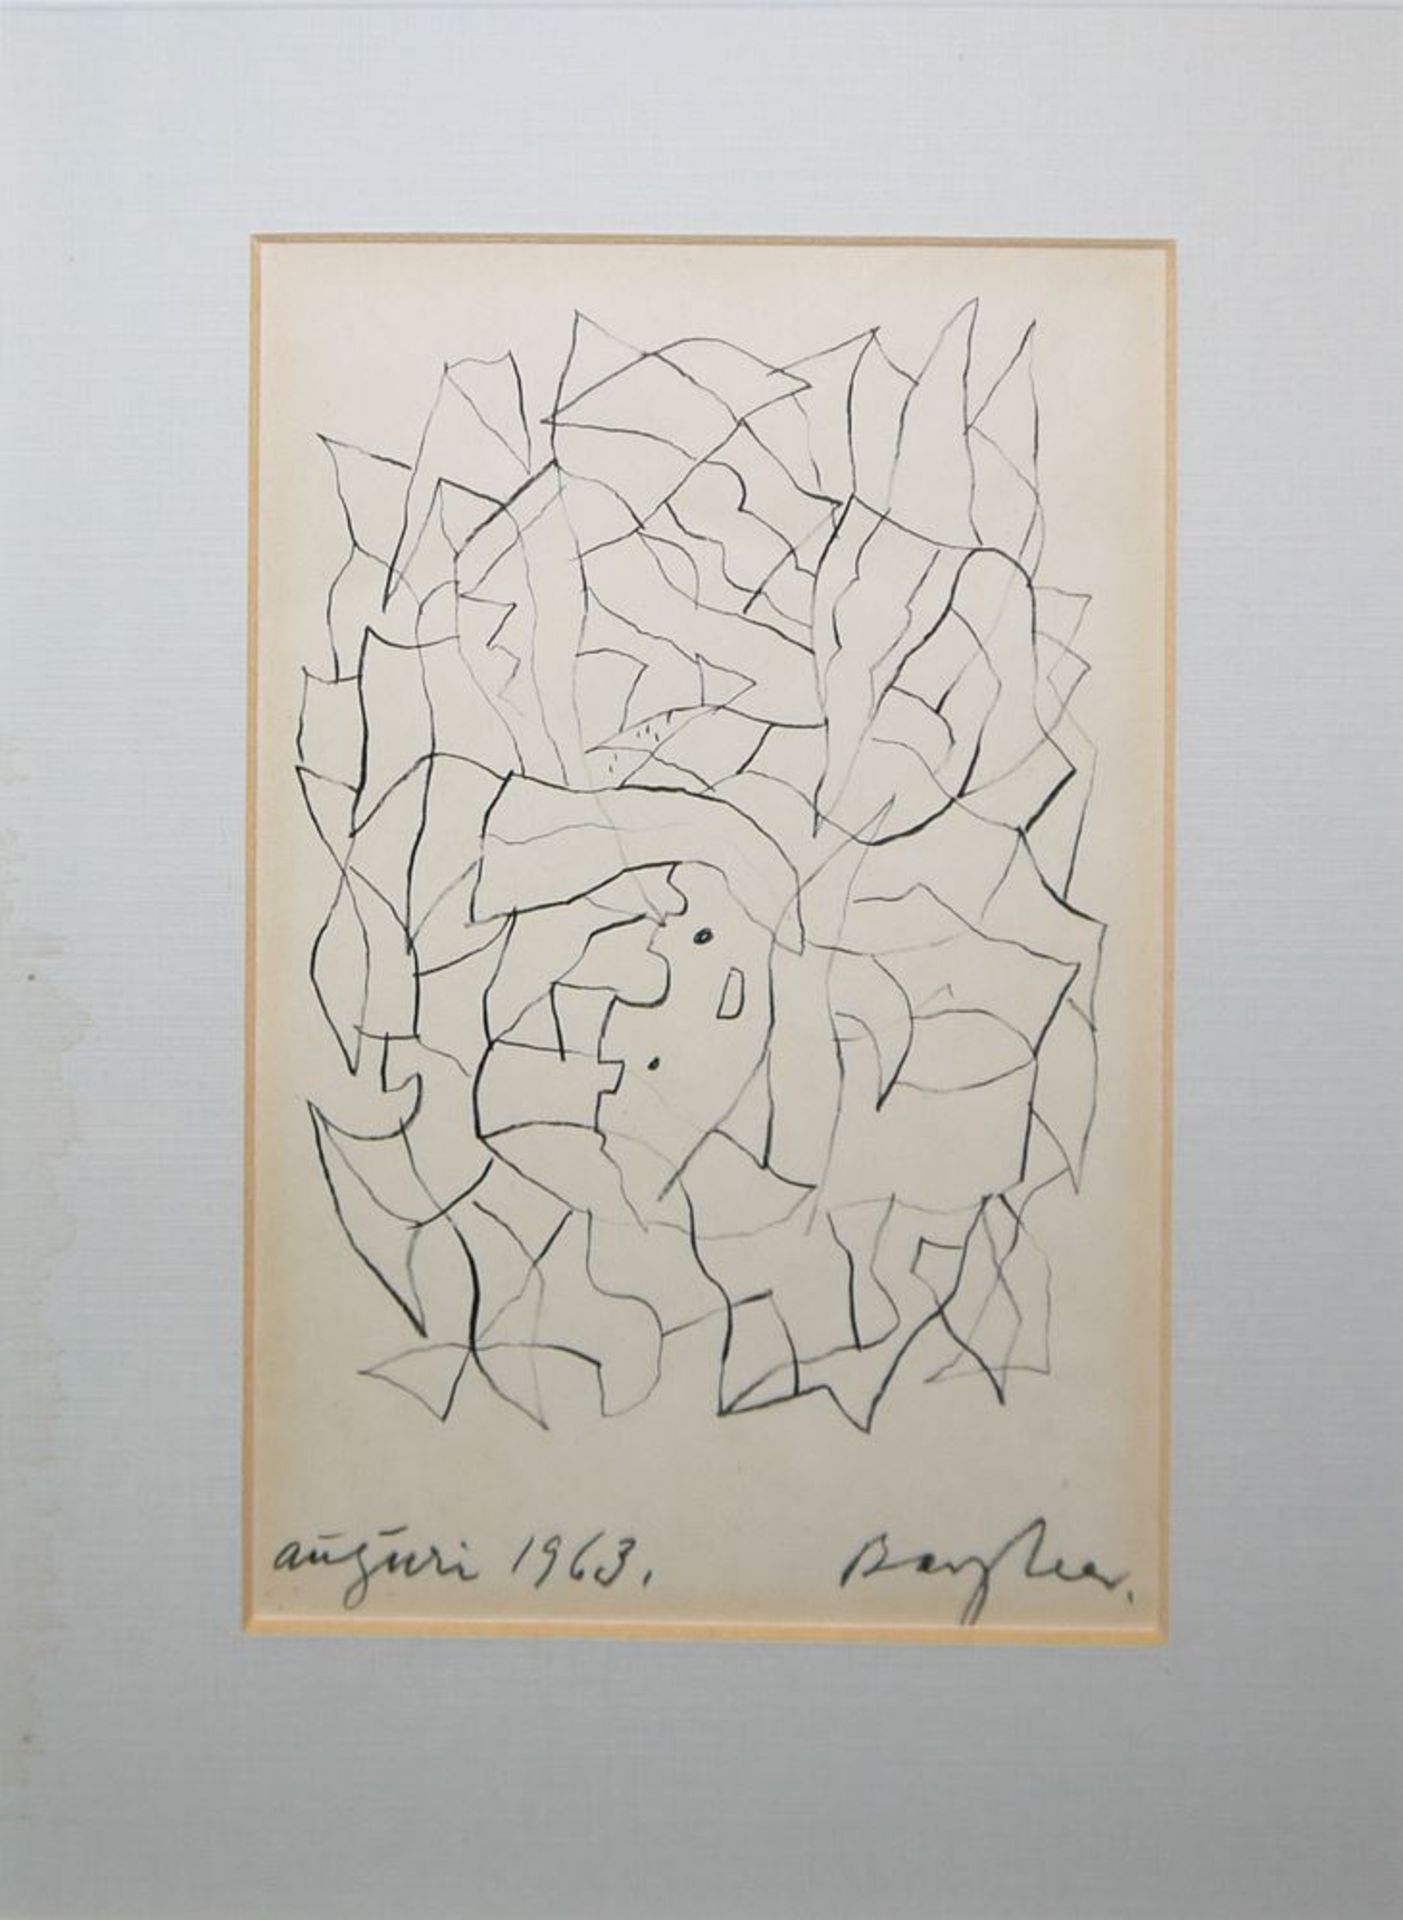 Eduard Bargheer, "Auguri 1963", signierte Zeichnung von 1962, gerahmt - Image 2 of 3